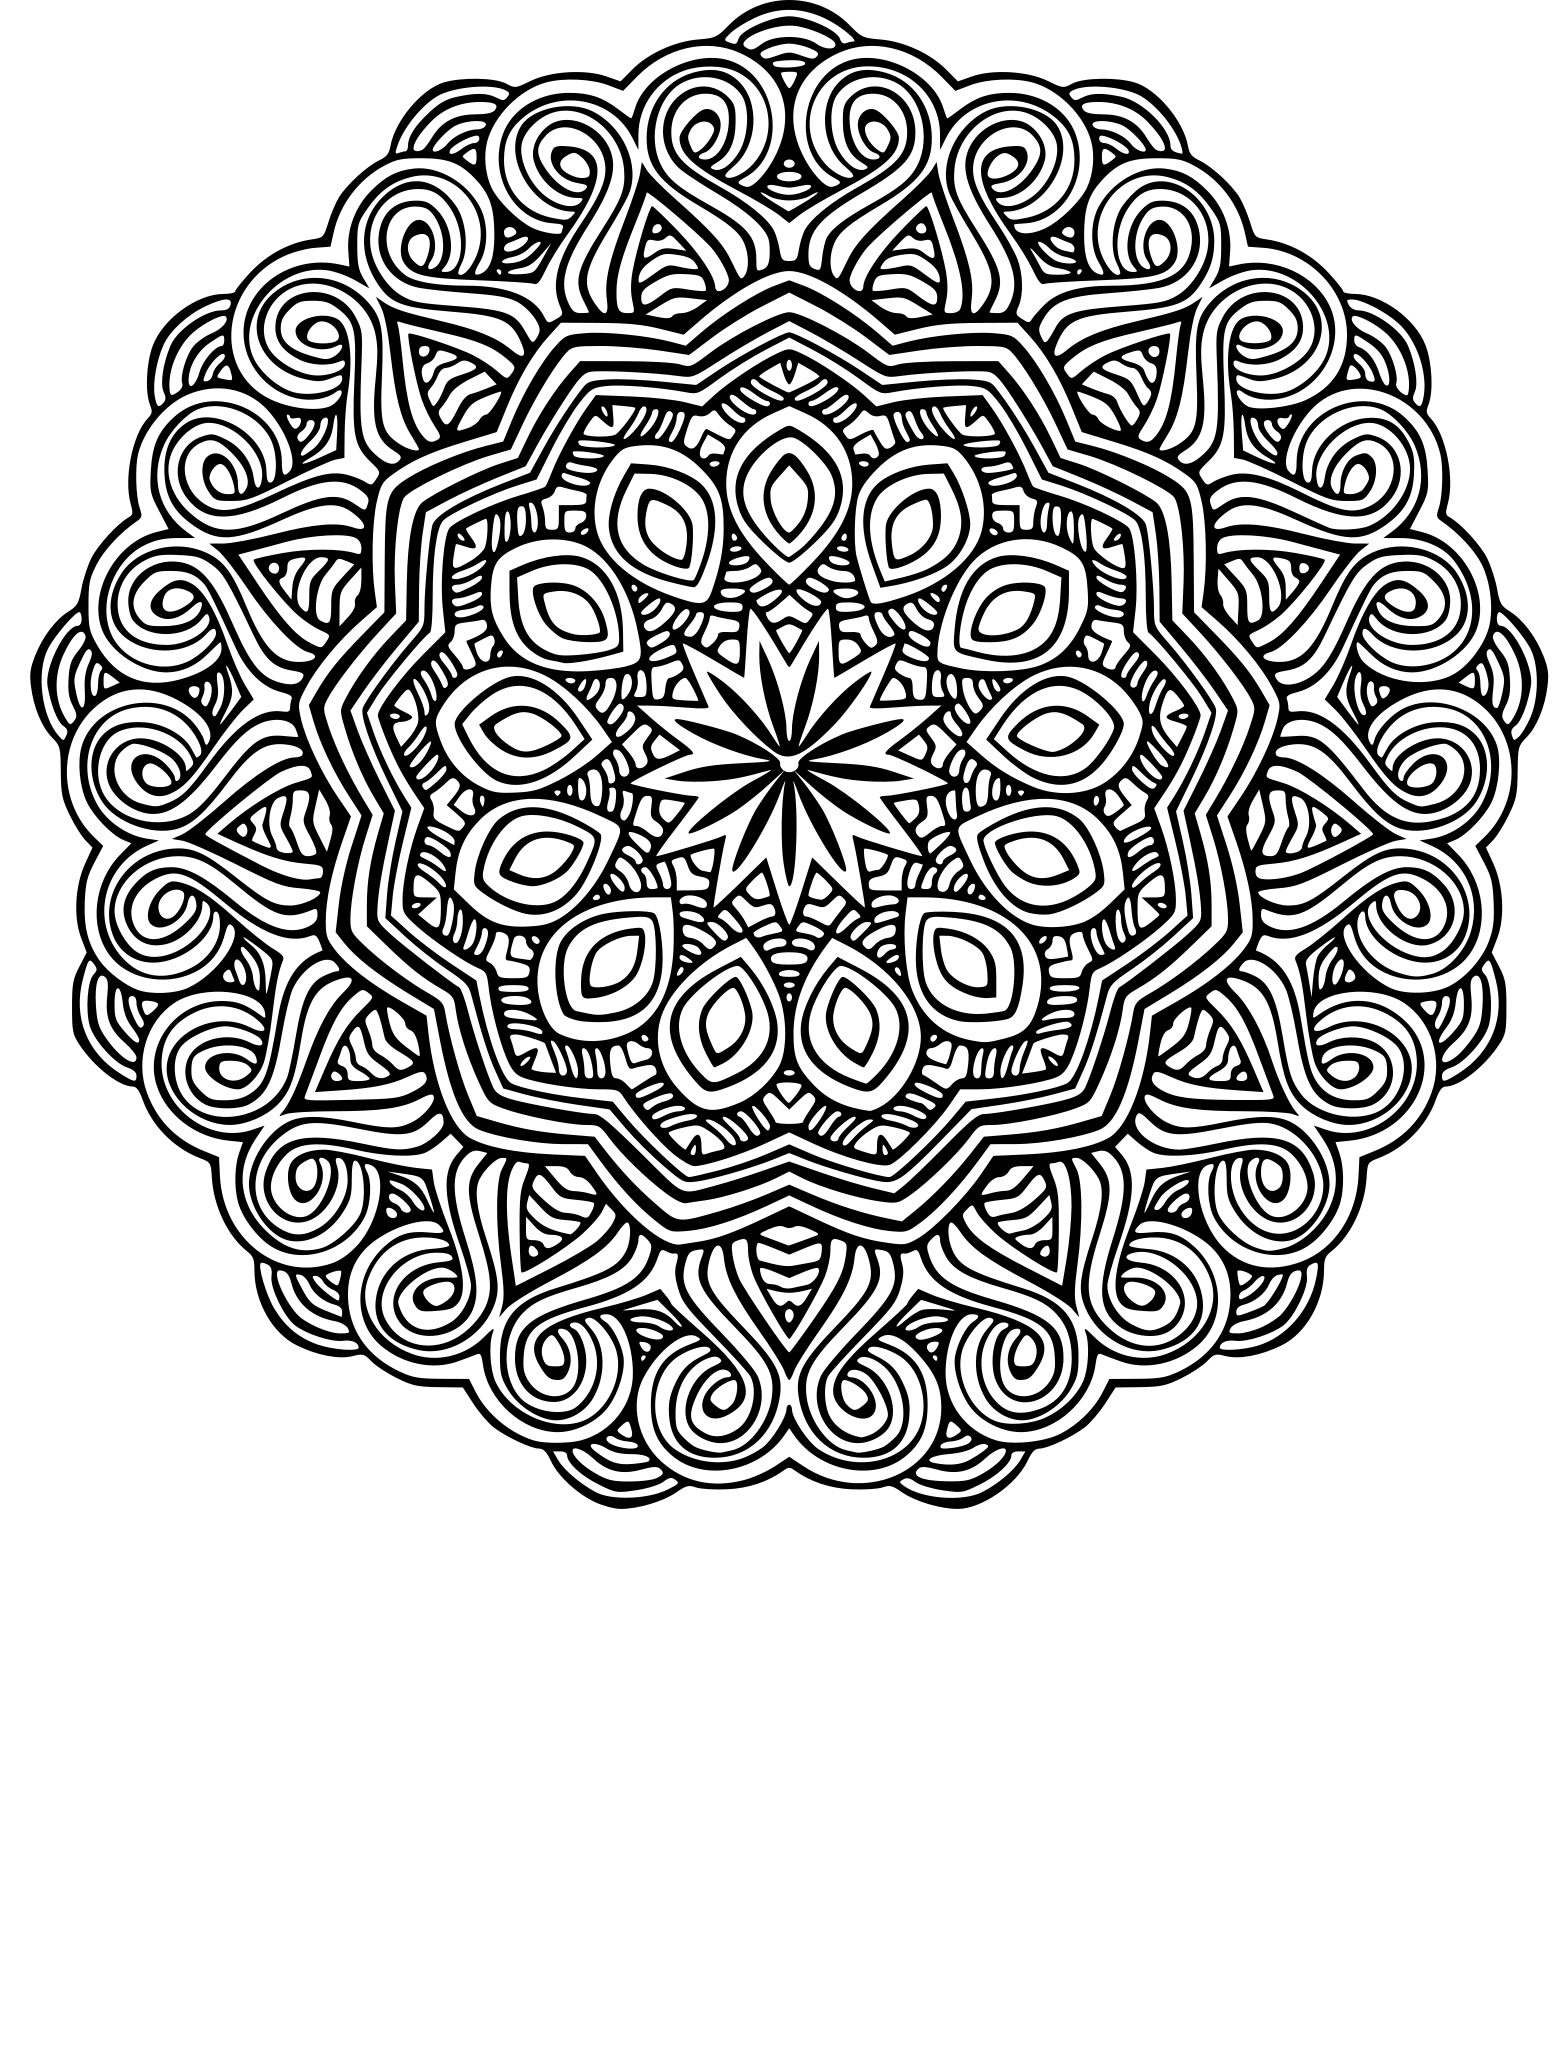 Coloriage Mandala Ethnique À Imprimer avec Coloriage De Mandala Difficile A Imprimer